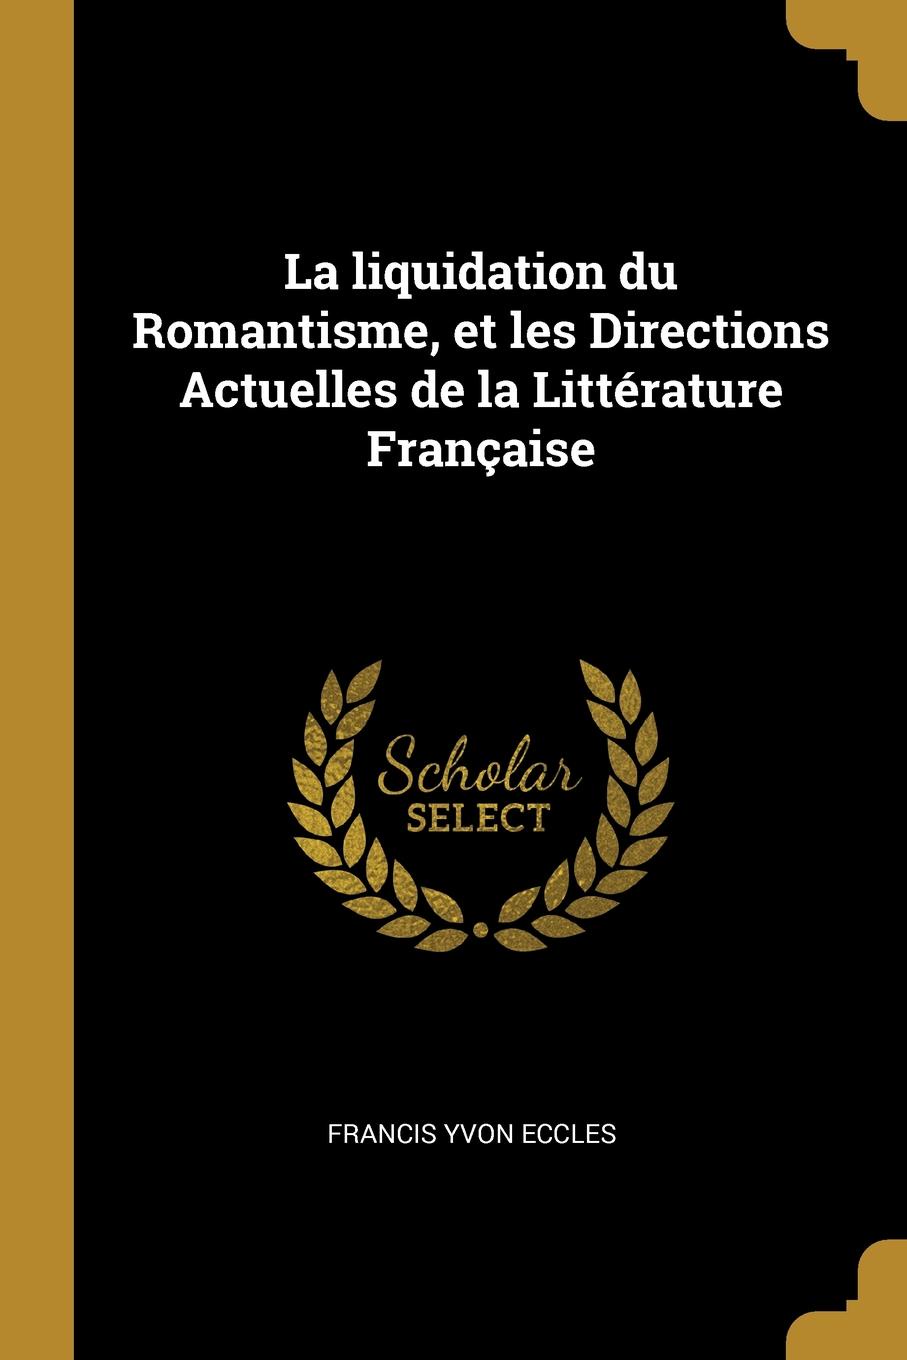 La liquidation du Romantisme, et les Directions Actuelles de la Litterature Francaise